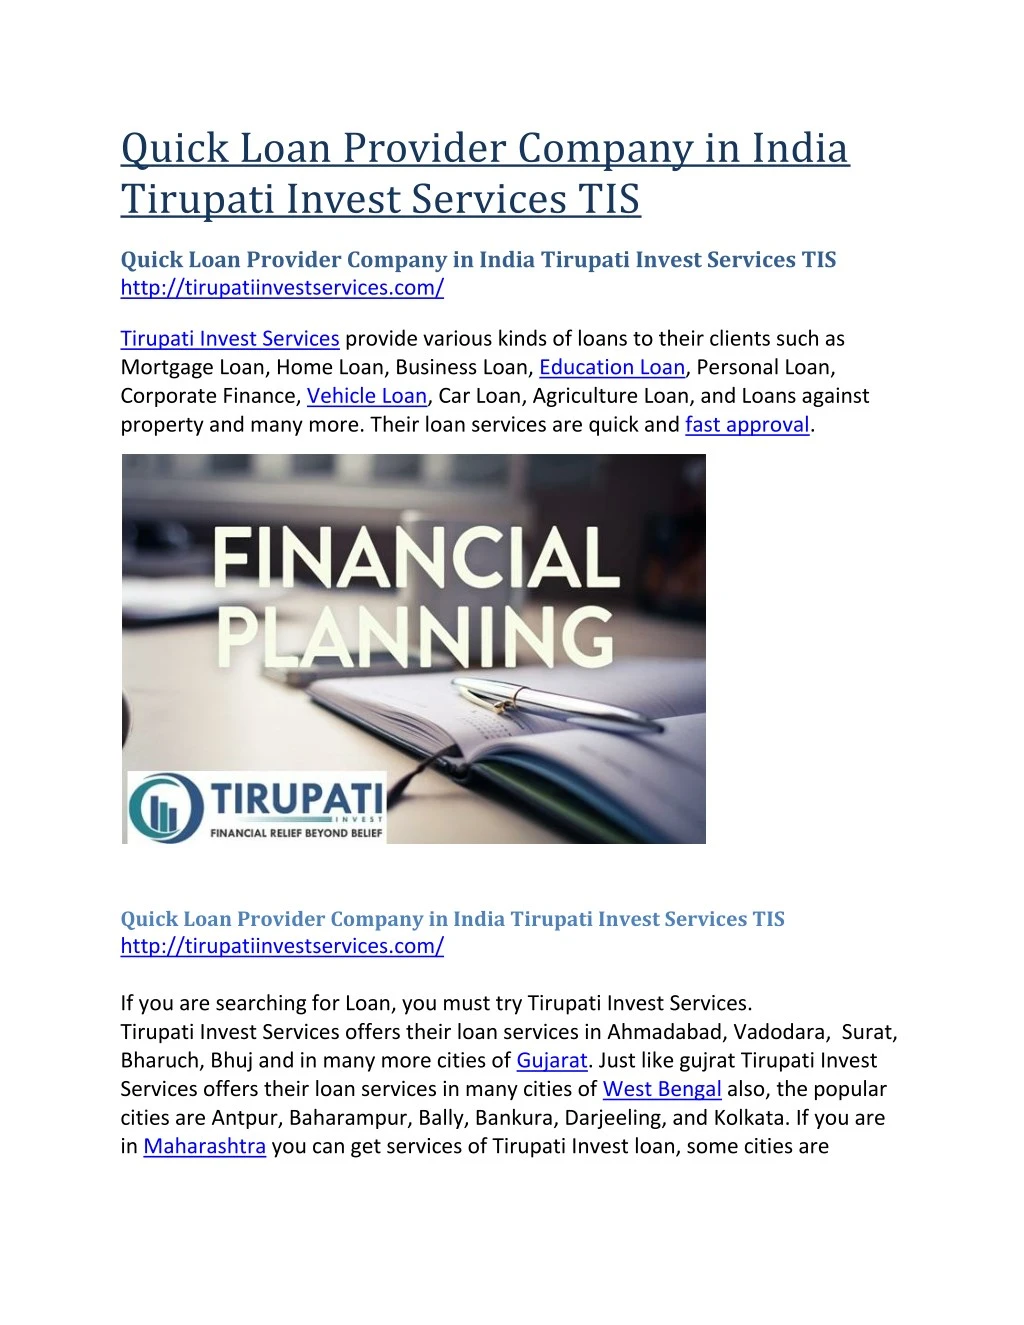 quick loan provider company in india tirupati